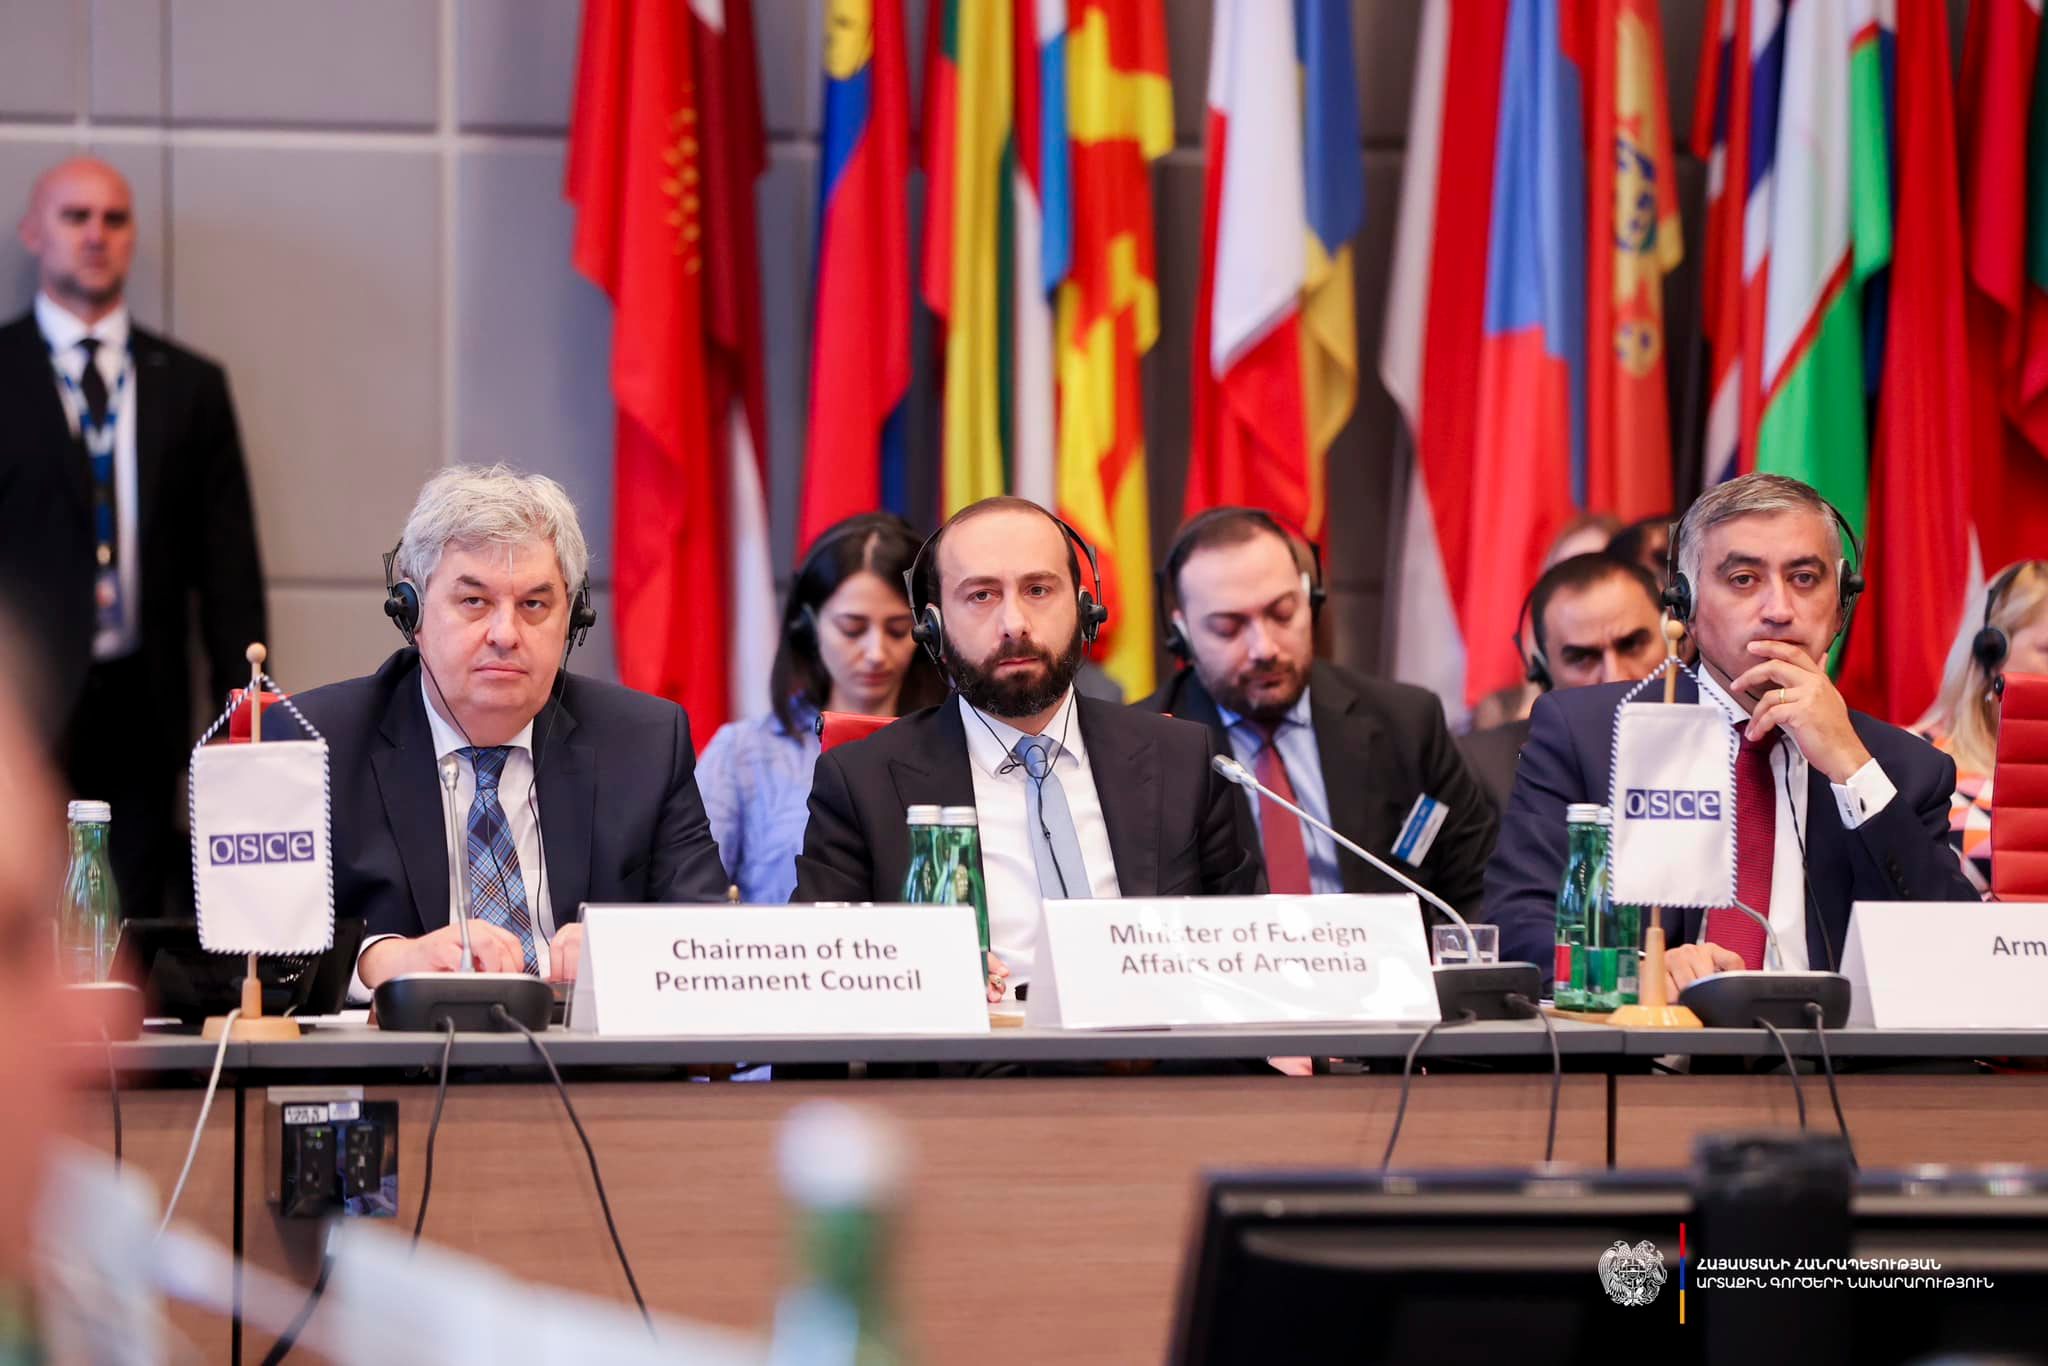 По требованию Армении созвано специальное заседание Постоянного совета ОБСЕ